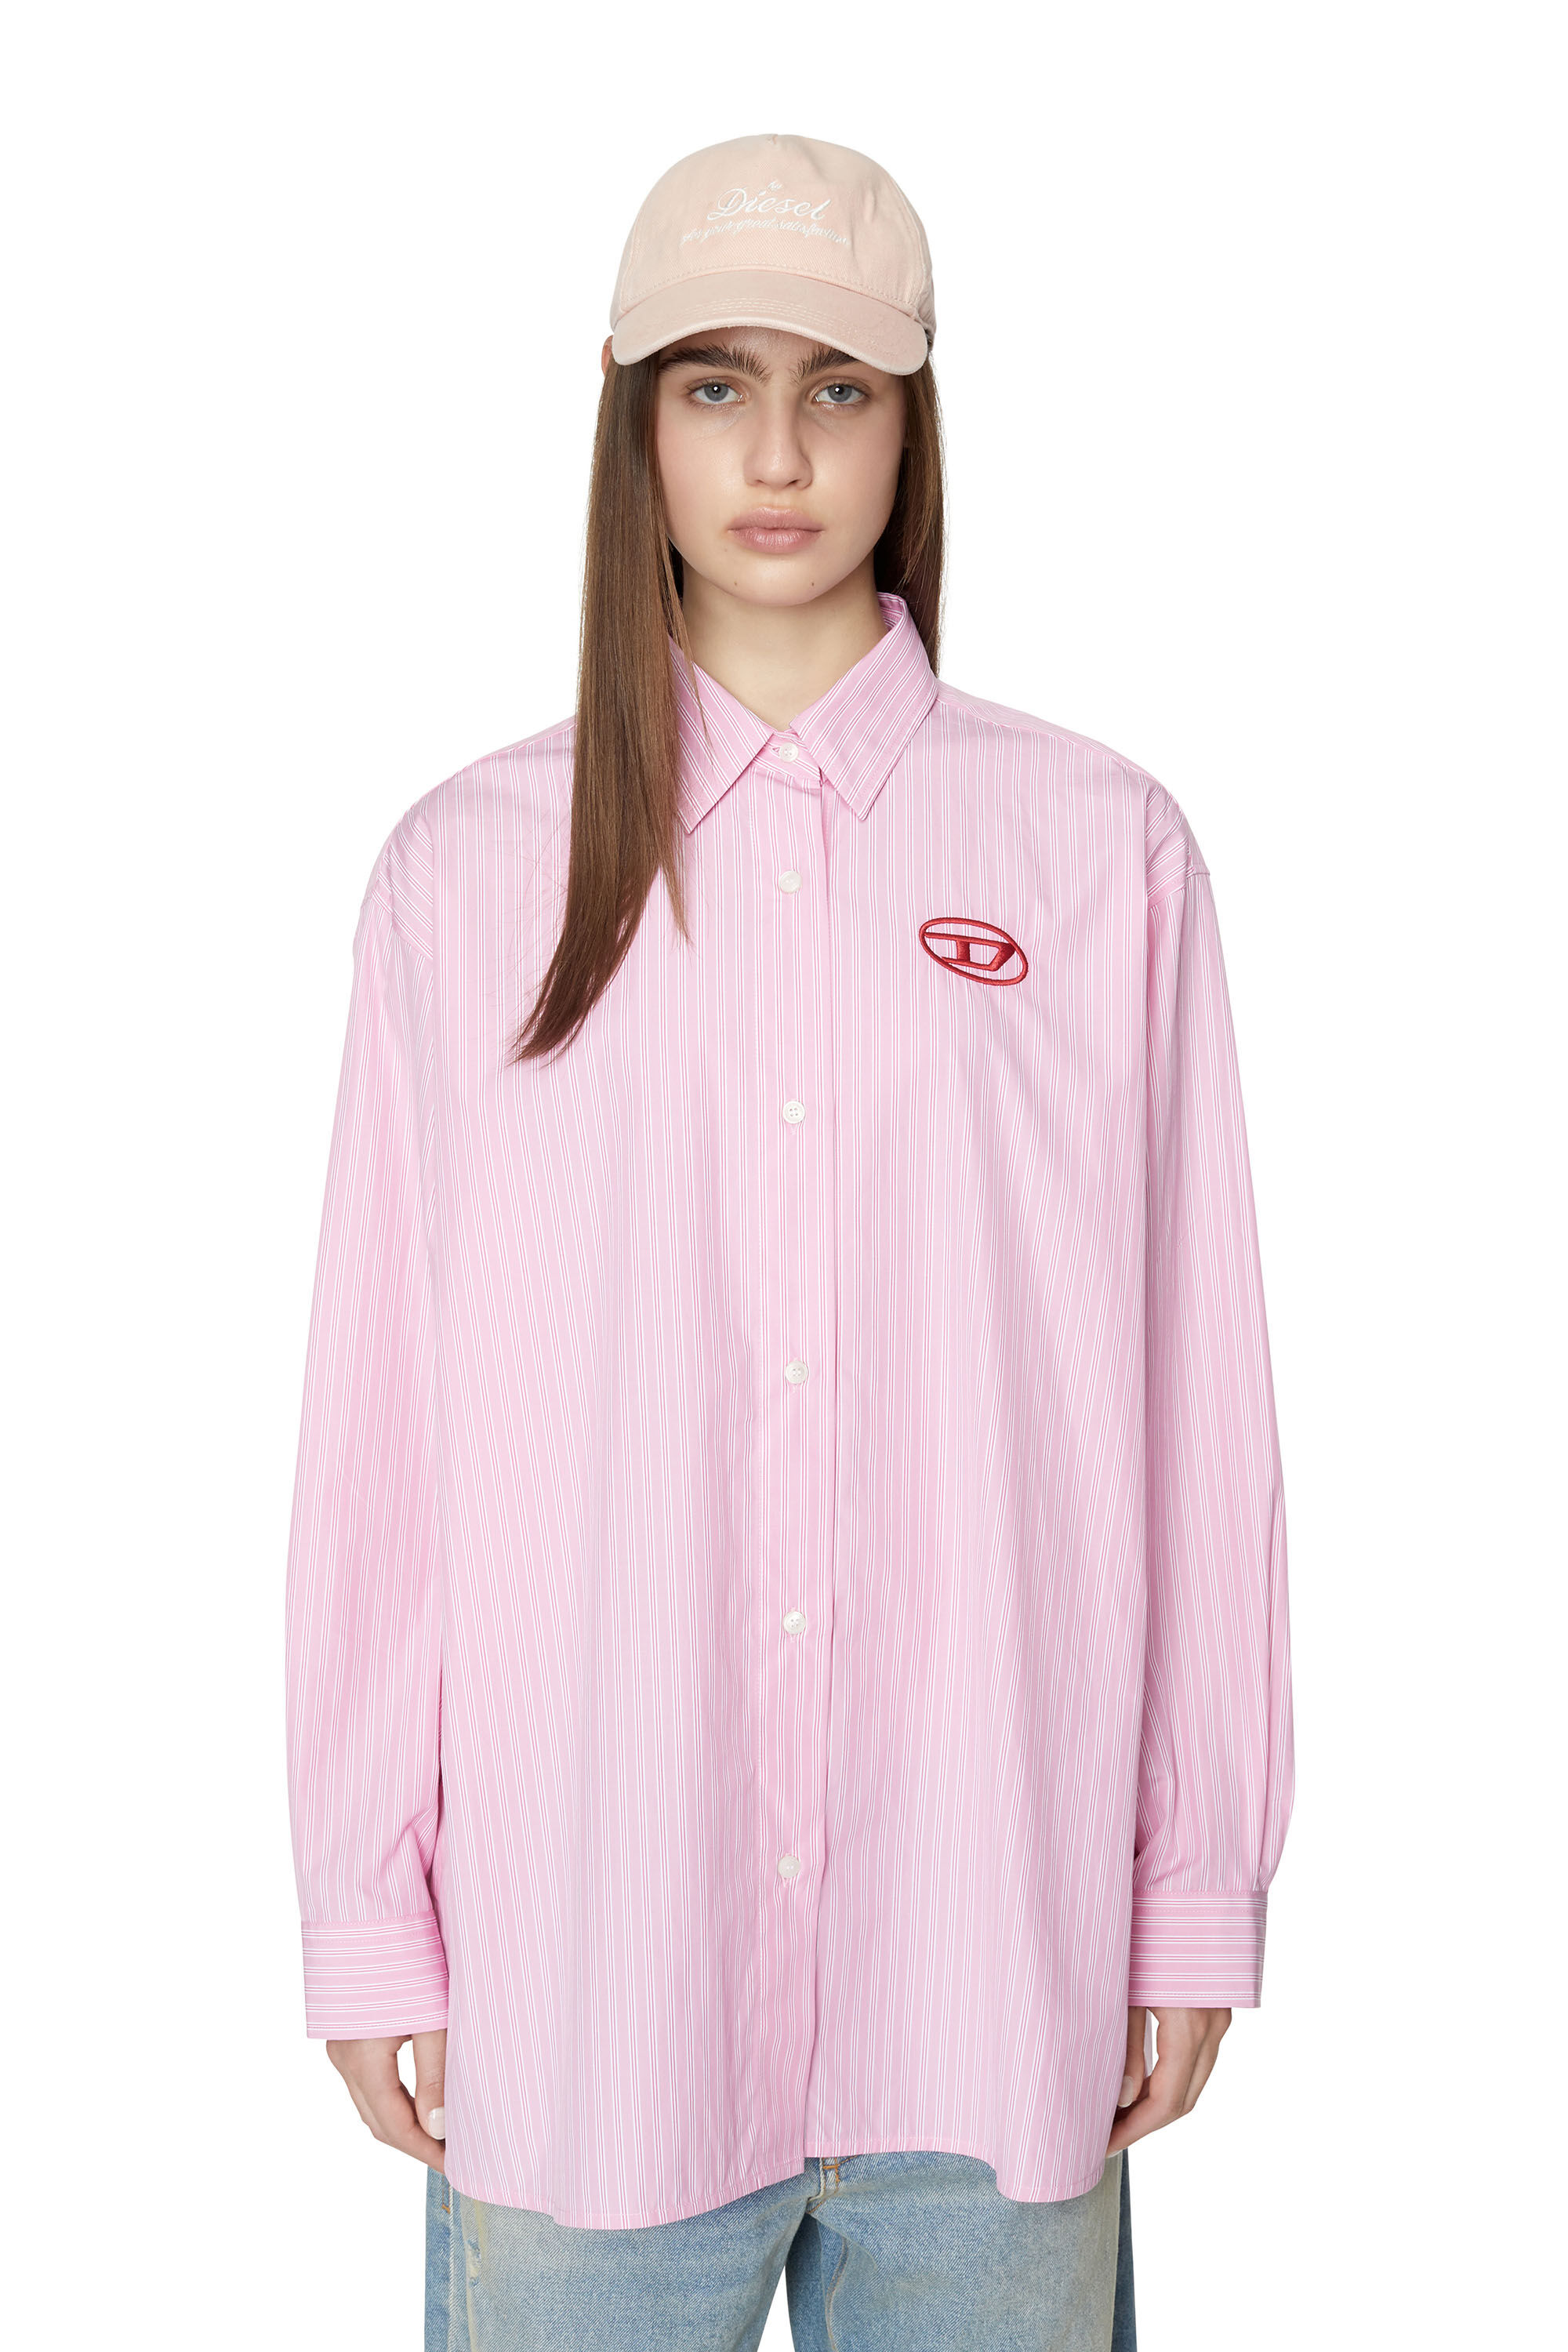 着丈790cmDiesel ピンク ストライプシャツ